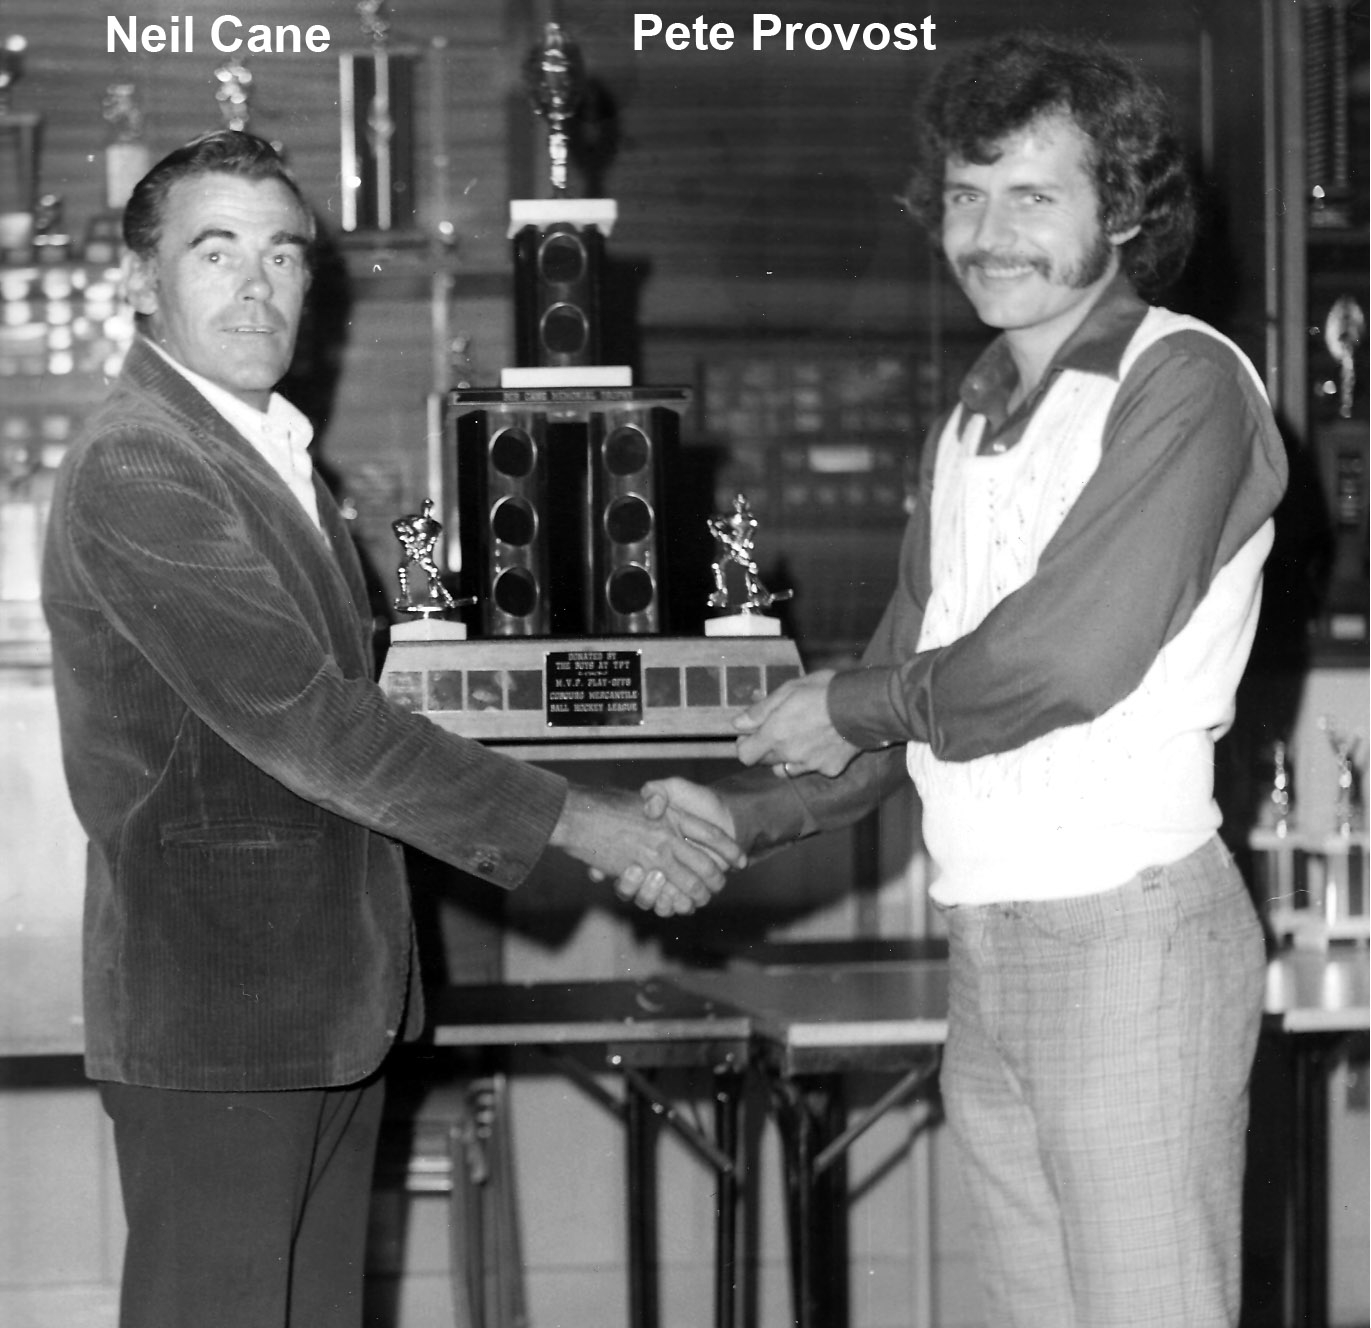 Neil Cane - Pete Provost